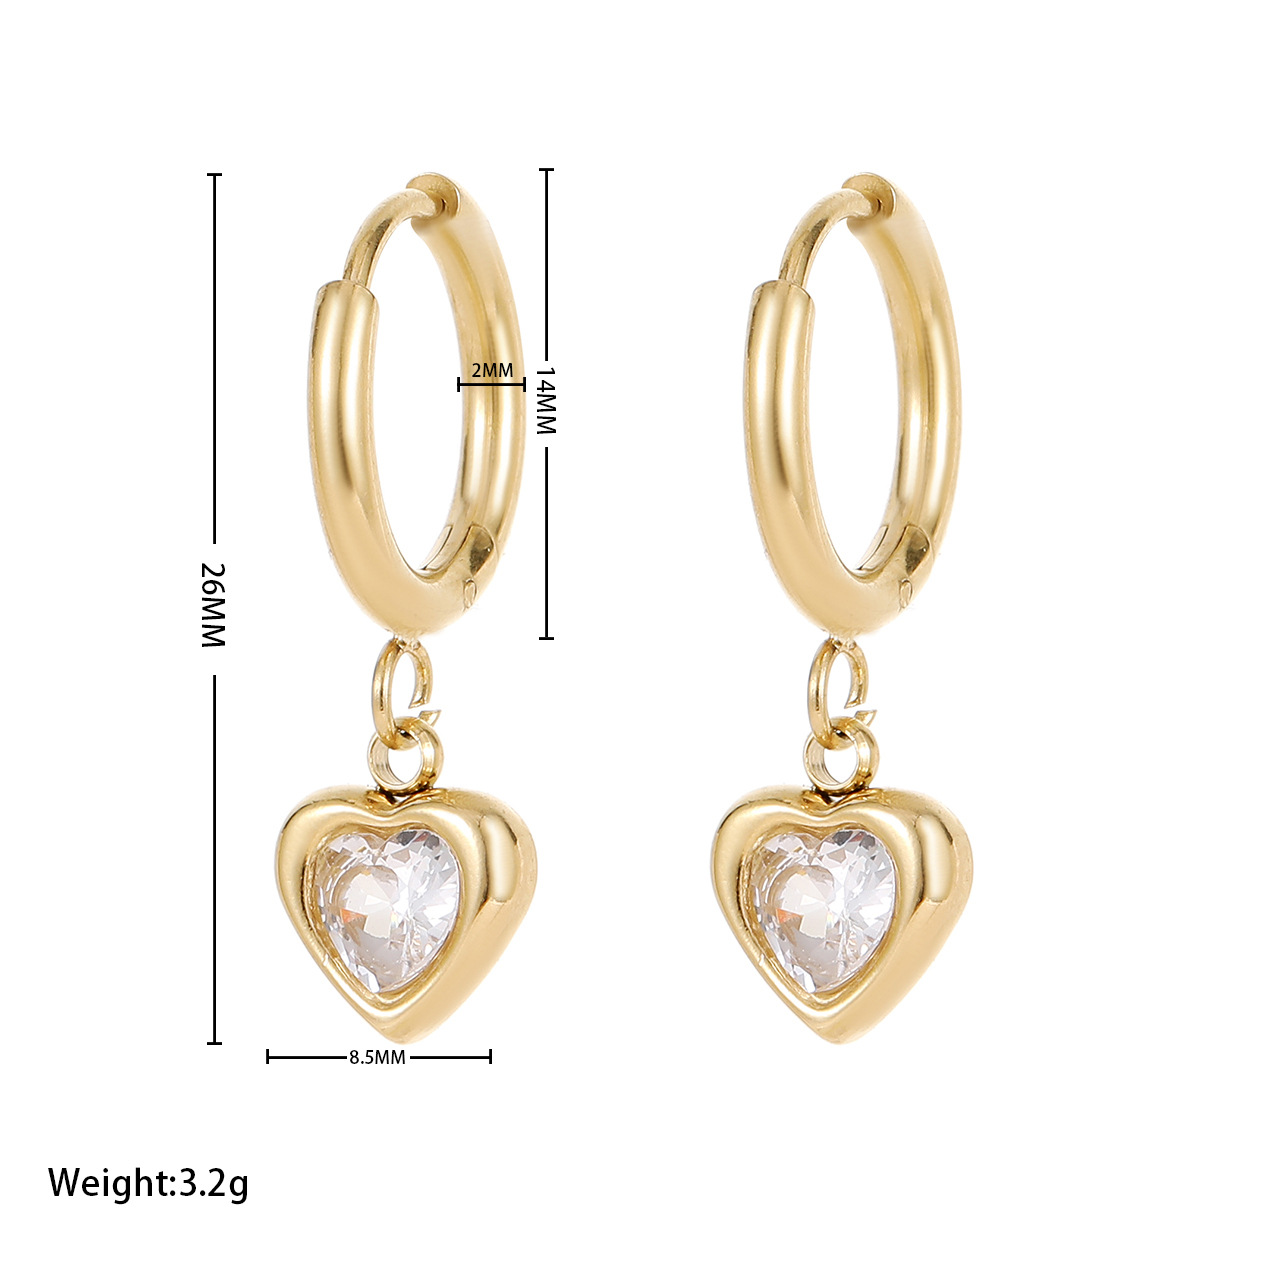 1:Earrings - Gold white zircon